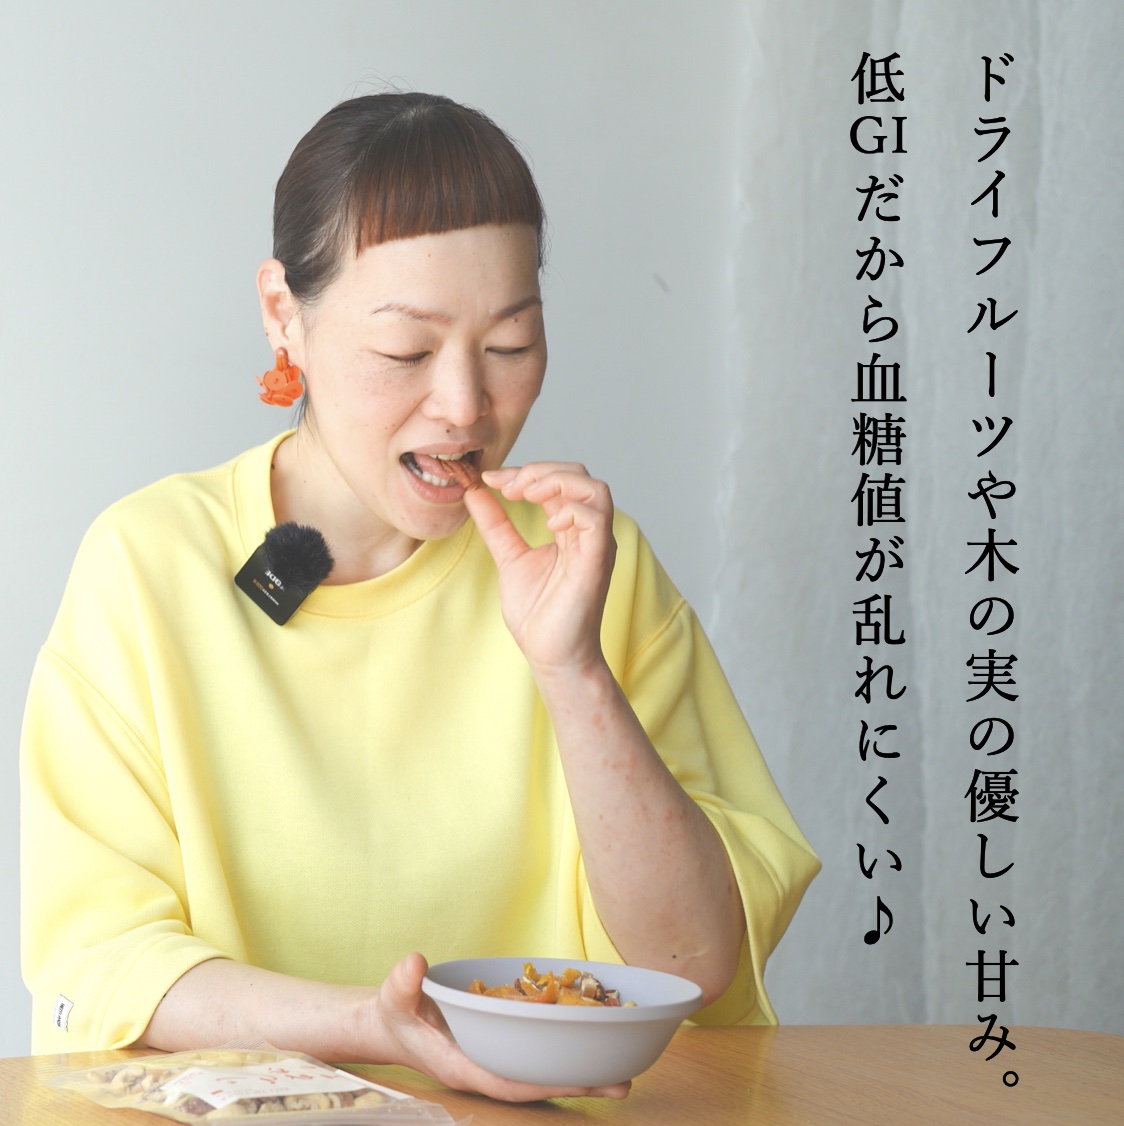 更年期専門店オアディスワンのおきかえナッツ「こうねんきっす」を食べる女性のイメージ